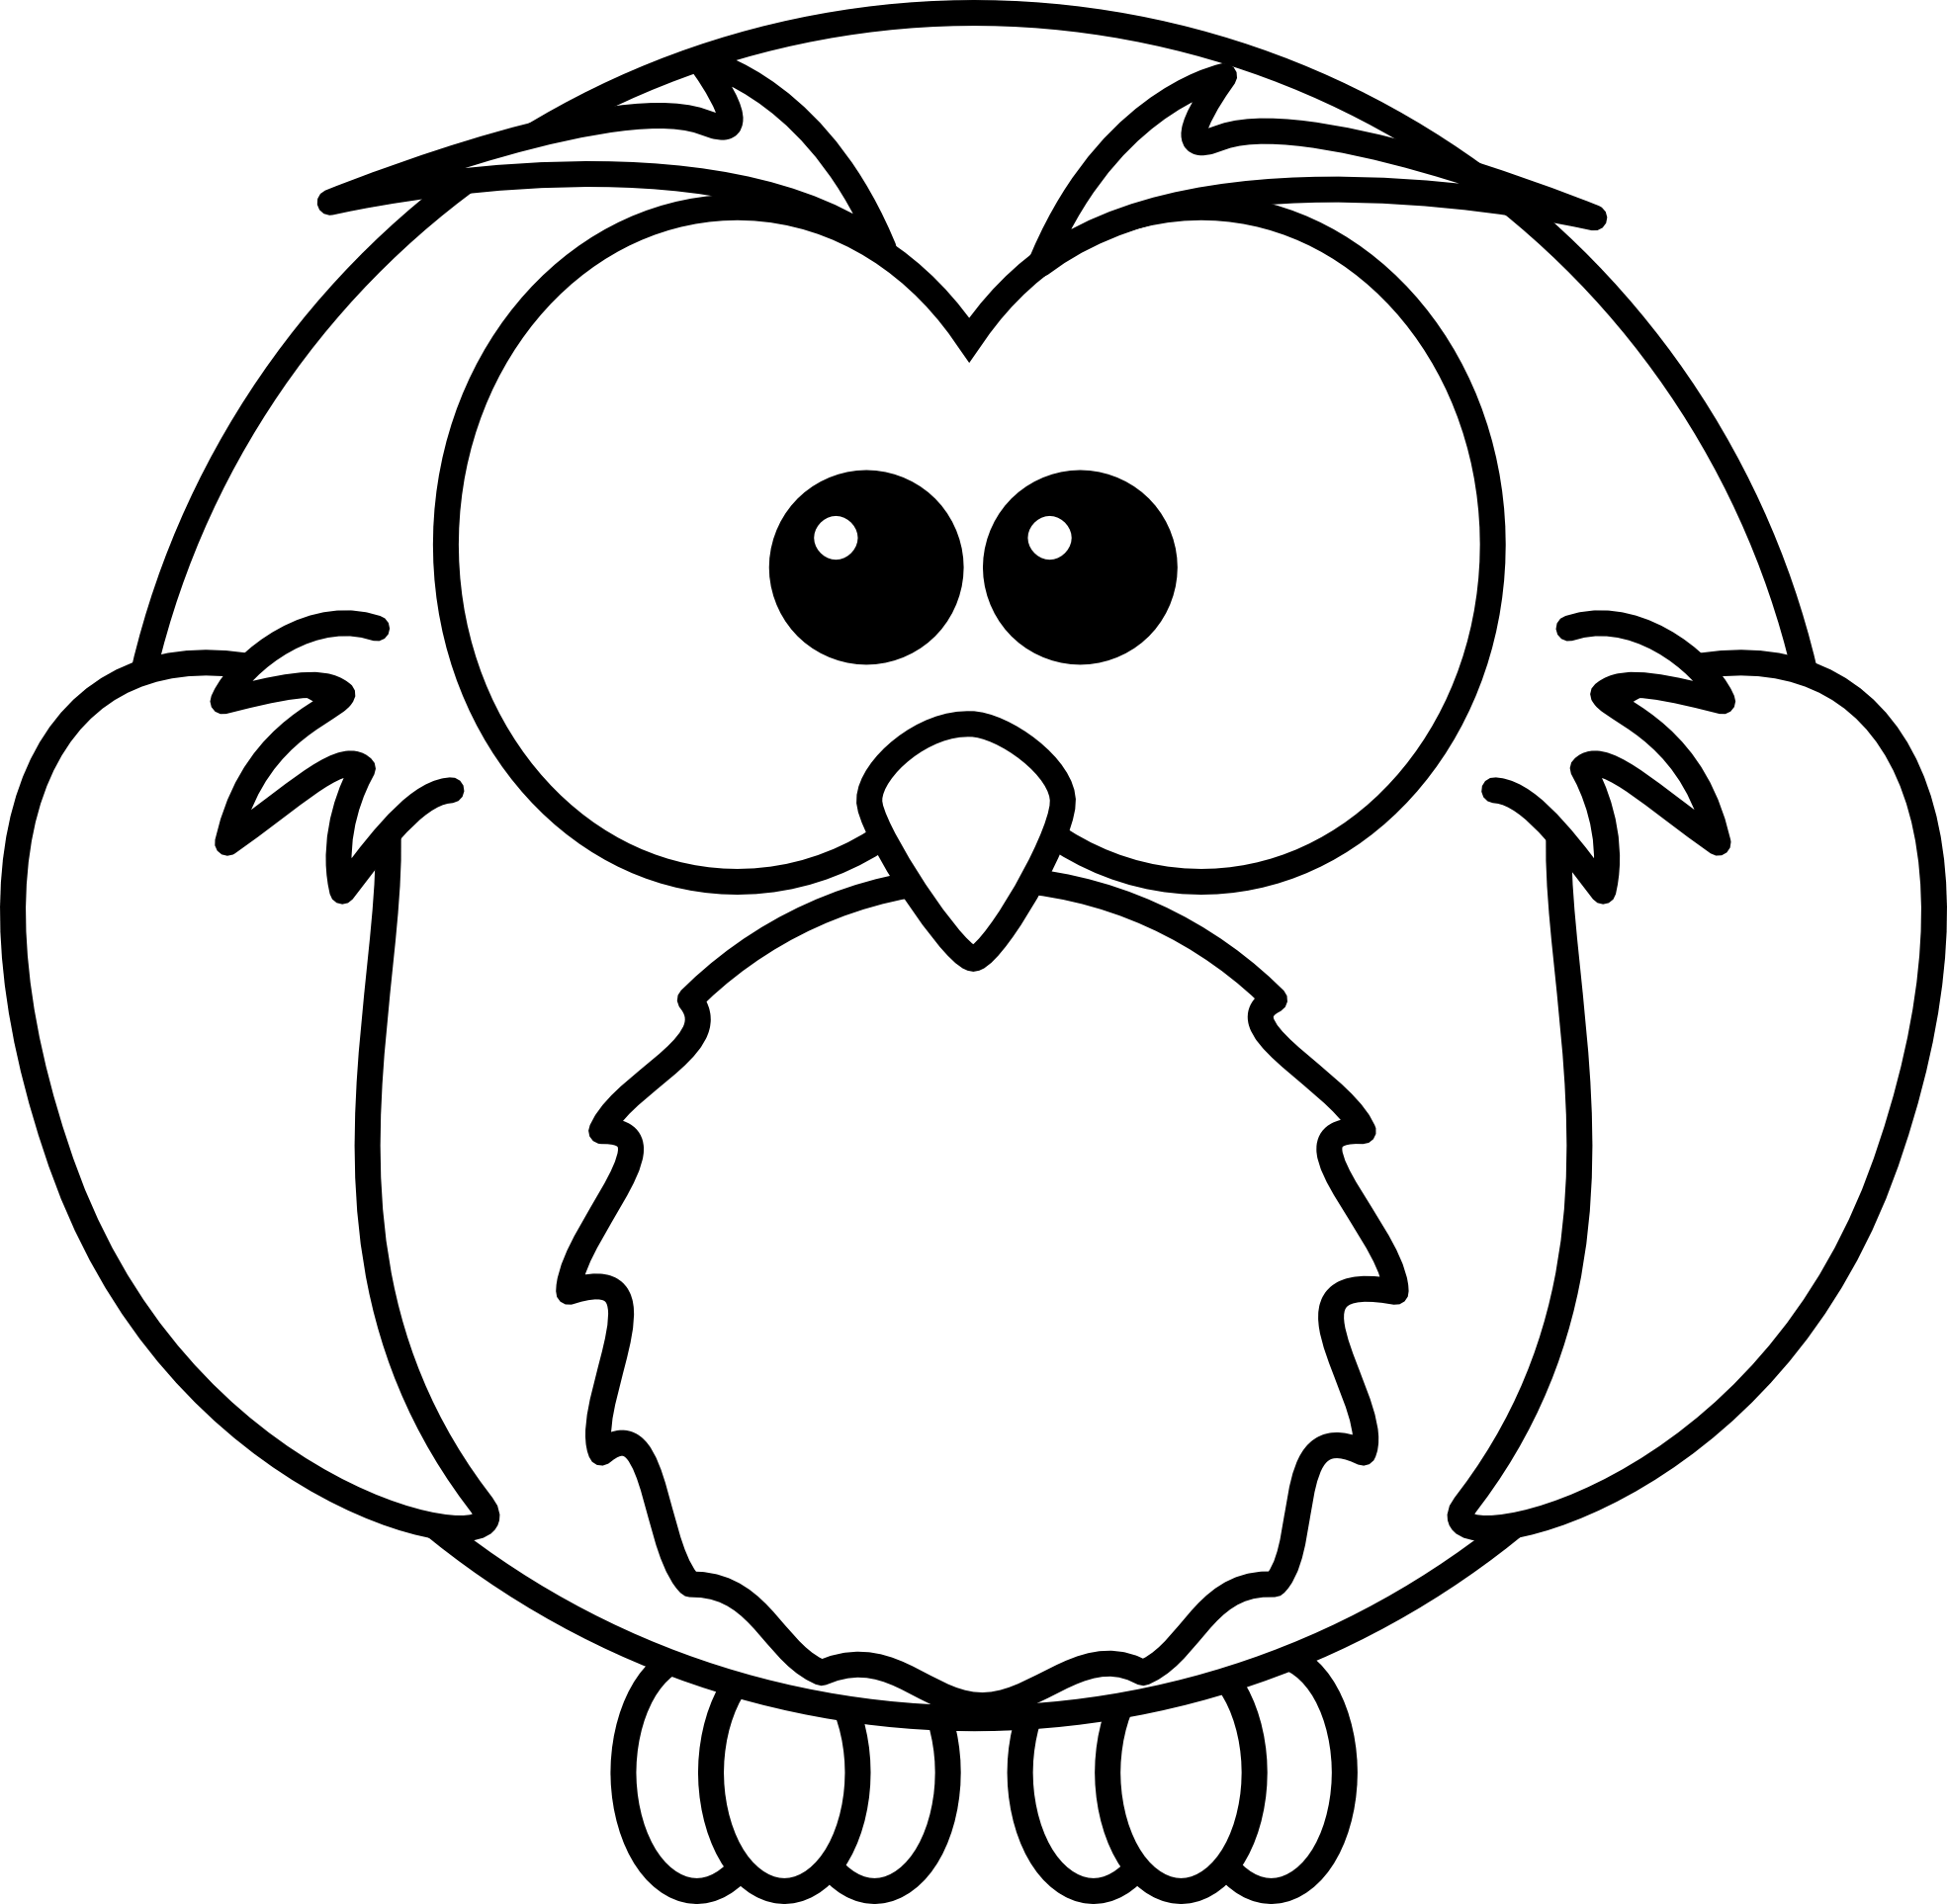 Elegant Black And White Owl Clip Art Image